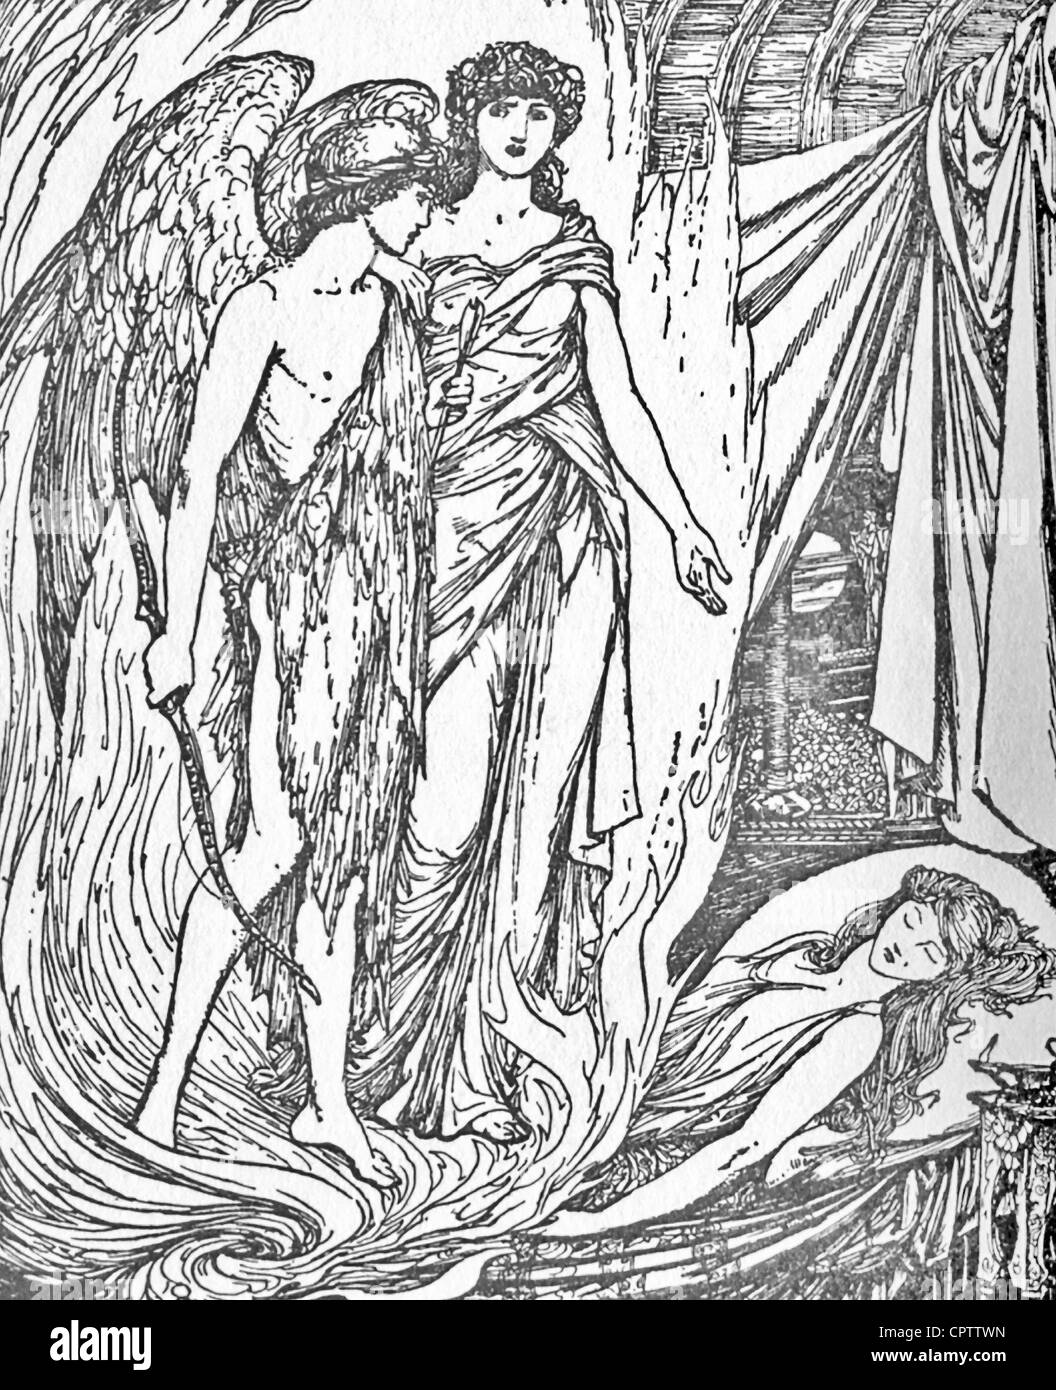 Cupido segue Aphrodite il comando per "sparare" psiche, ma egli scheggiature se stesso con la freccia e cade per la psiche. Foto Stock